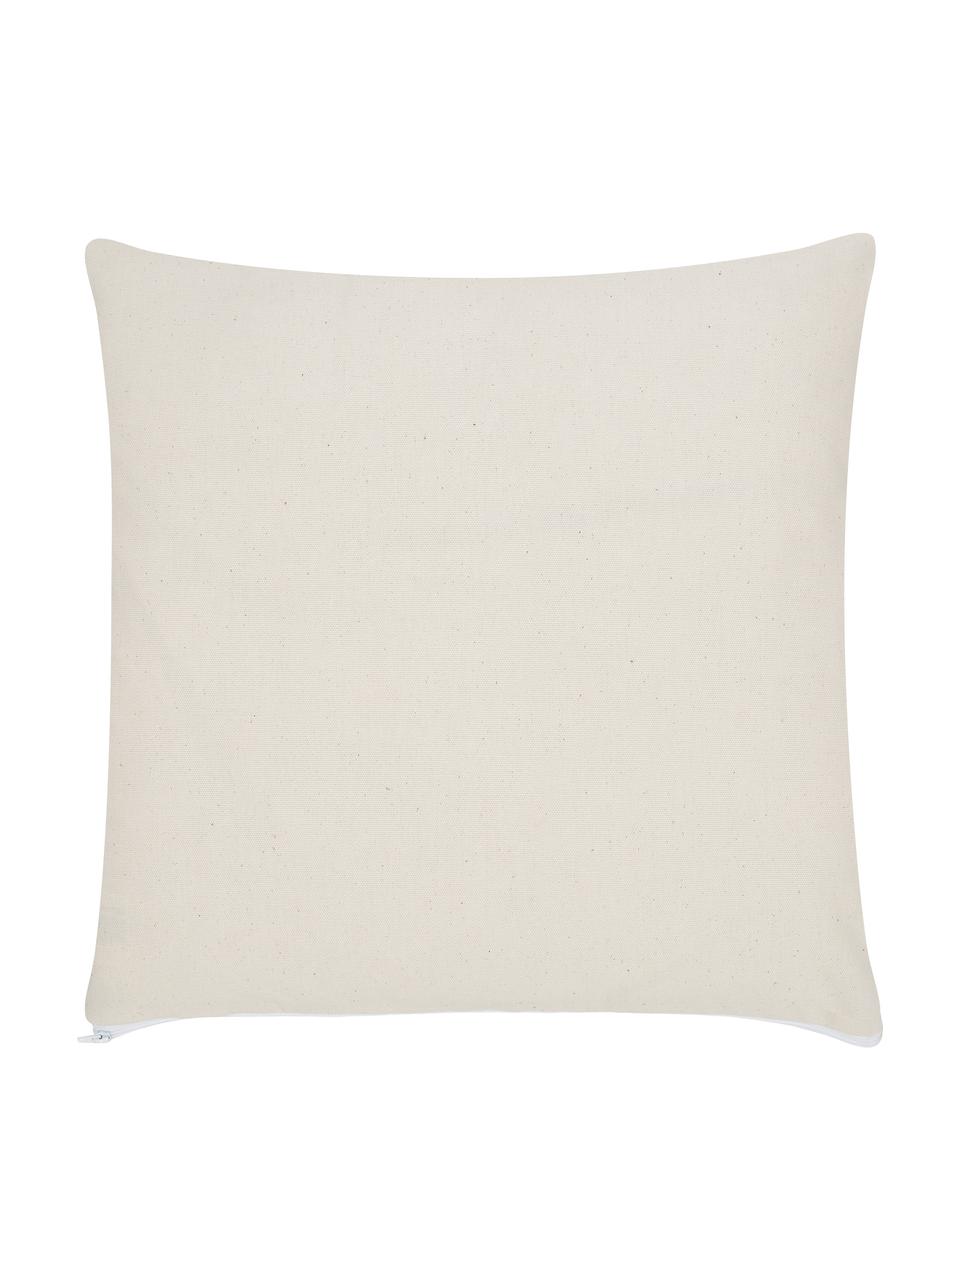 Poszewka na poduszkę w stylu boho Indy, 100% bawełna, Biały, czarny, S 45 x D 45 cm